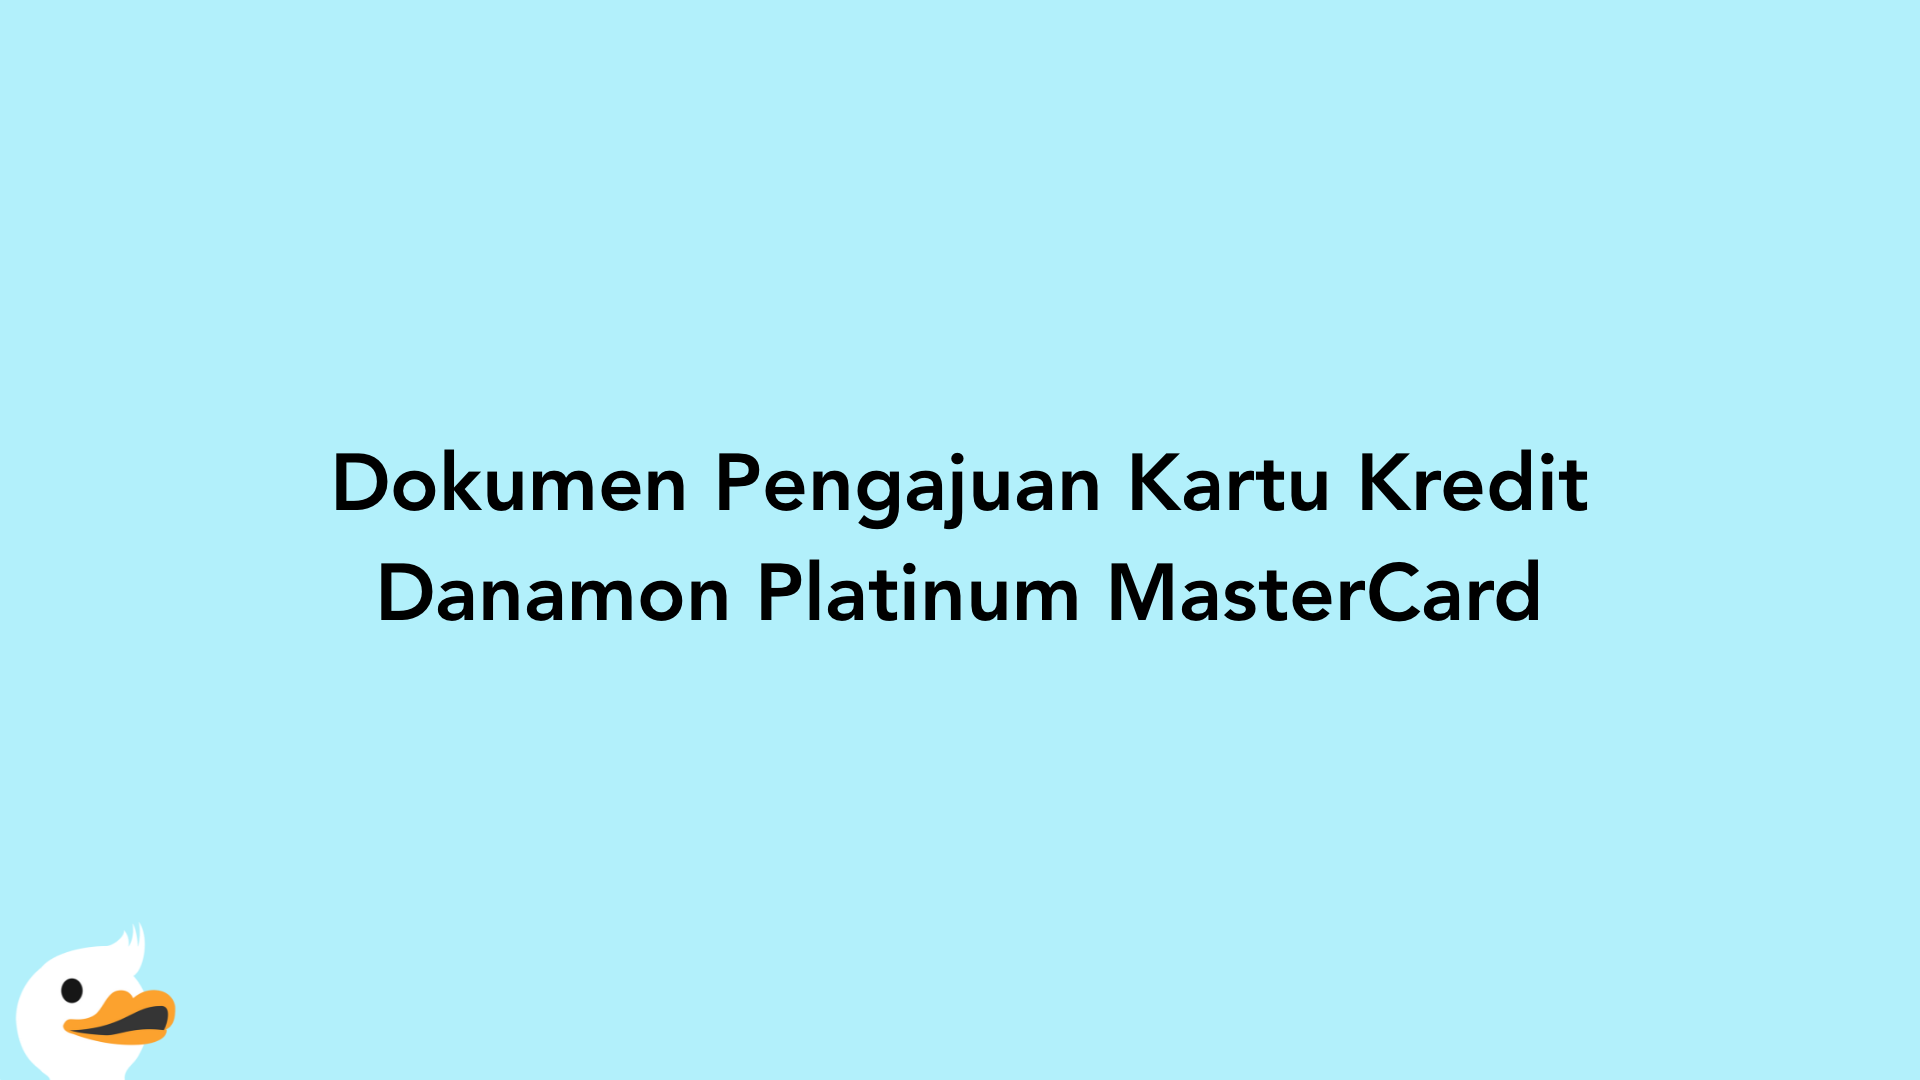 Dokumen Pengajuan Kartu Kredit Danamon Platinum MasterCard